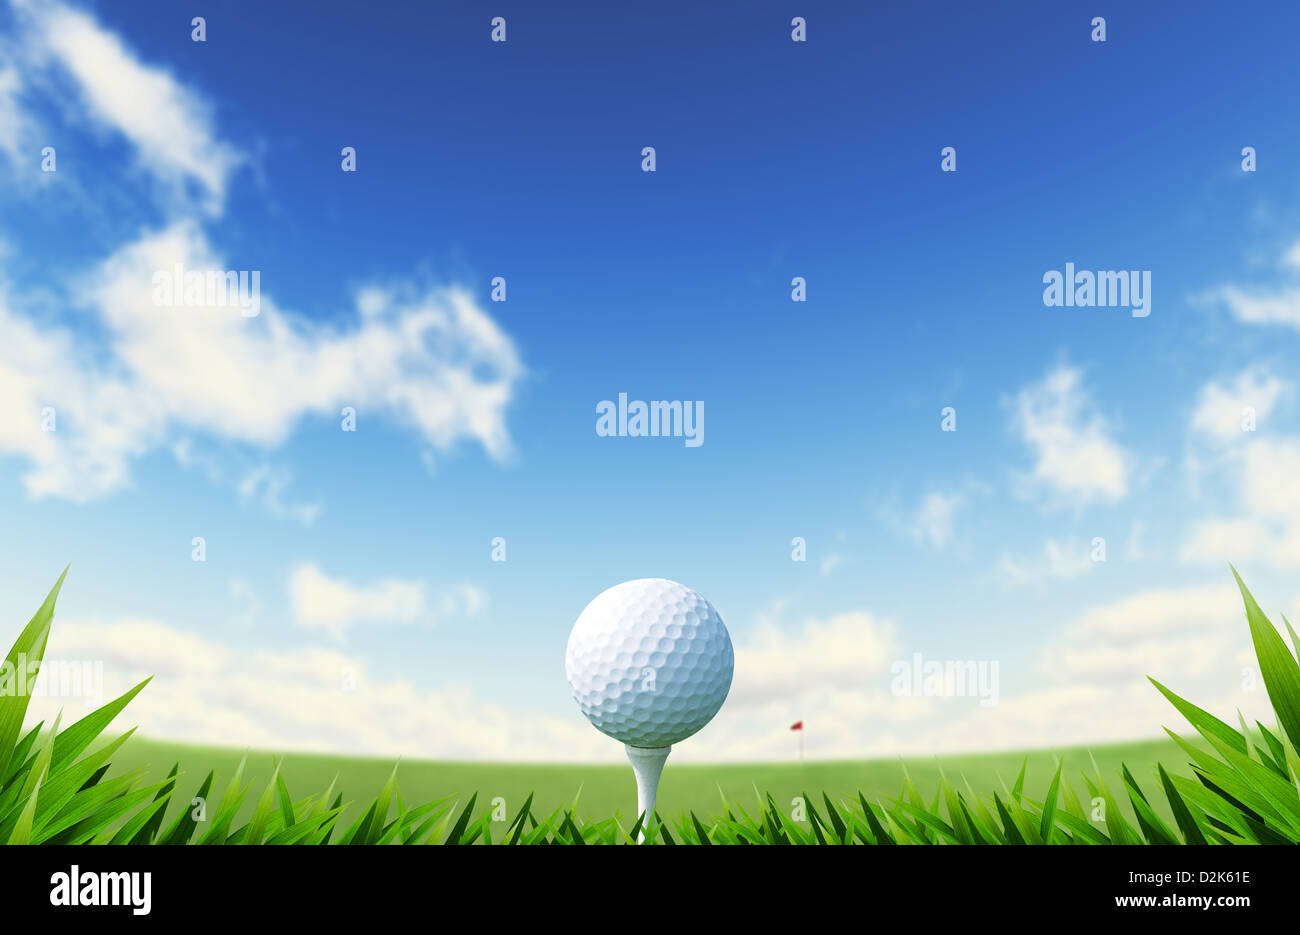 Green Golf-Gericht mit Nahaufnahme auf Rasen und Ball am Abschlag. mit roten Flagge auf einem Abstand und blauer Himmel mit flauschigen Wolken. Stockfoto